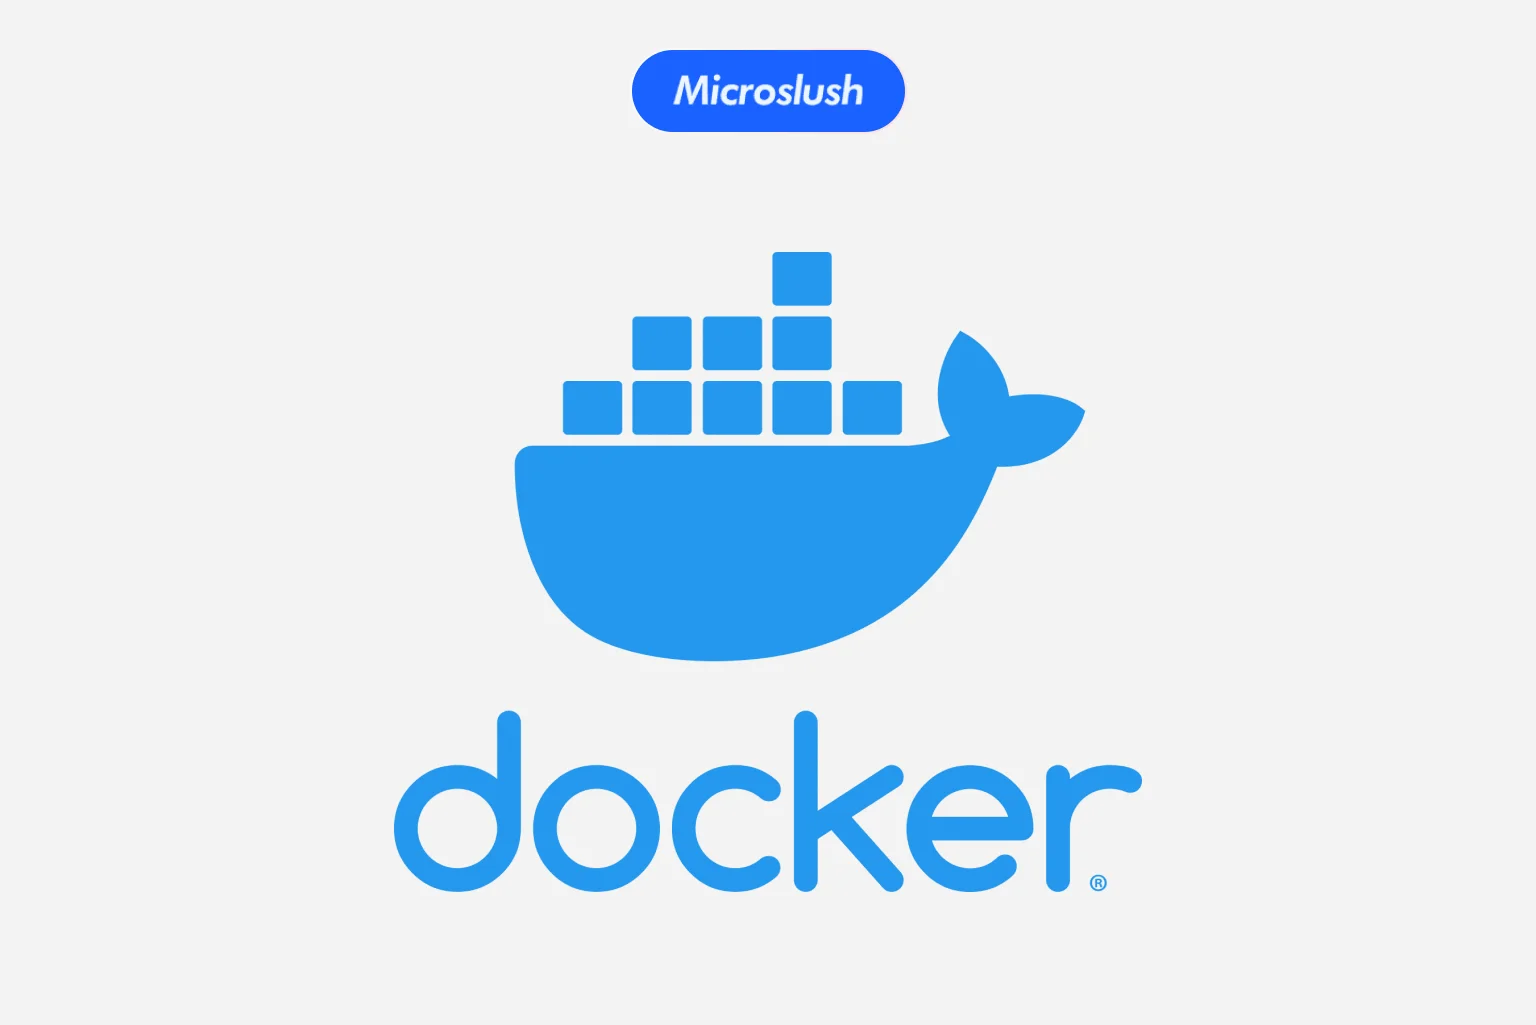 Benefits of Docker